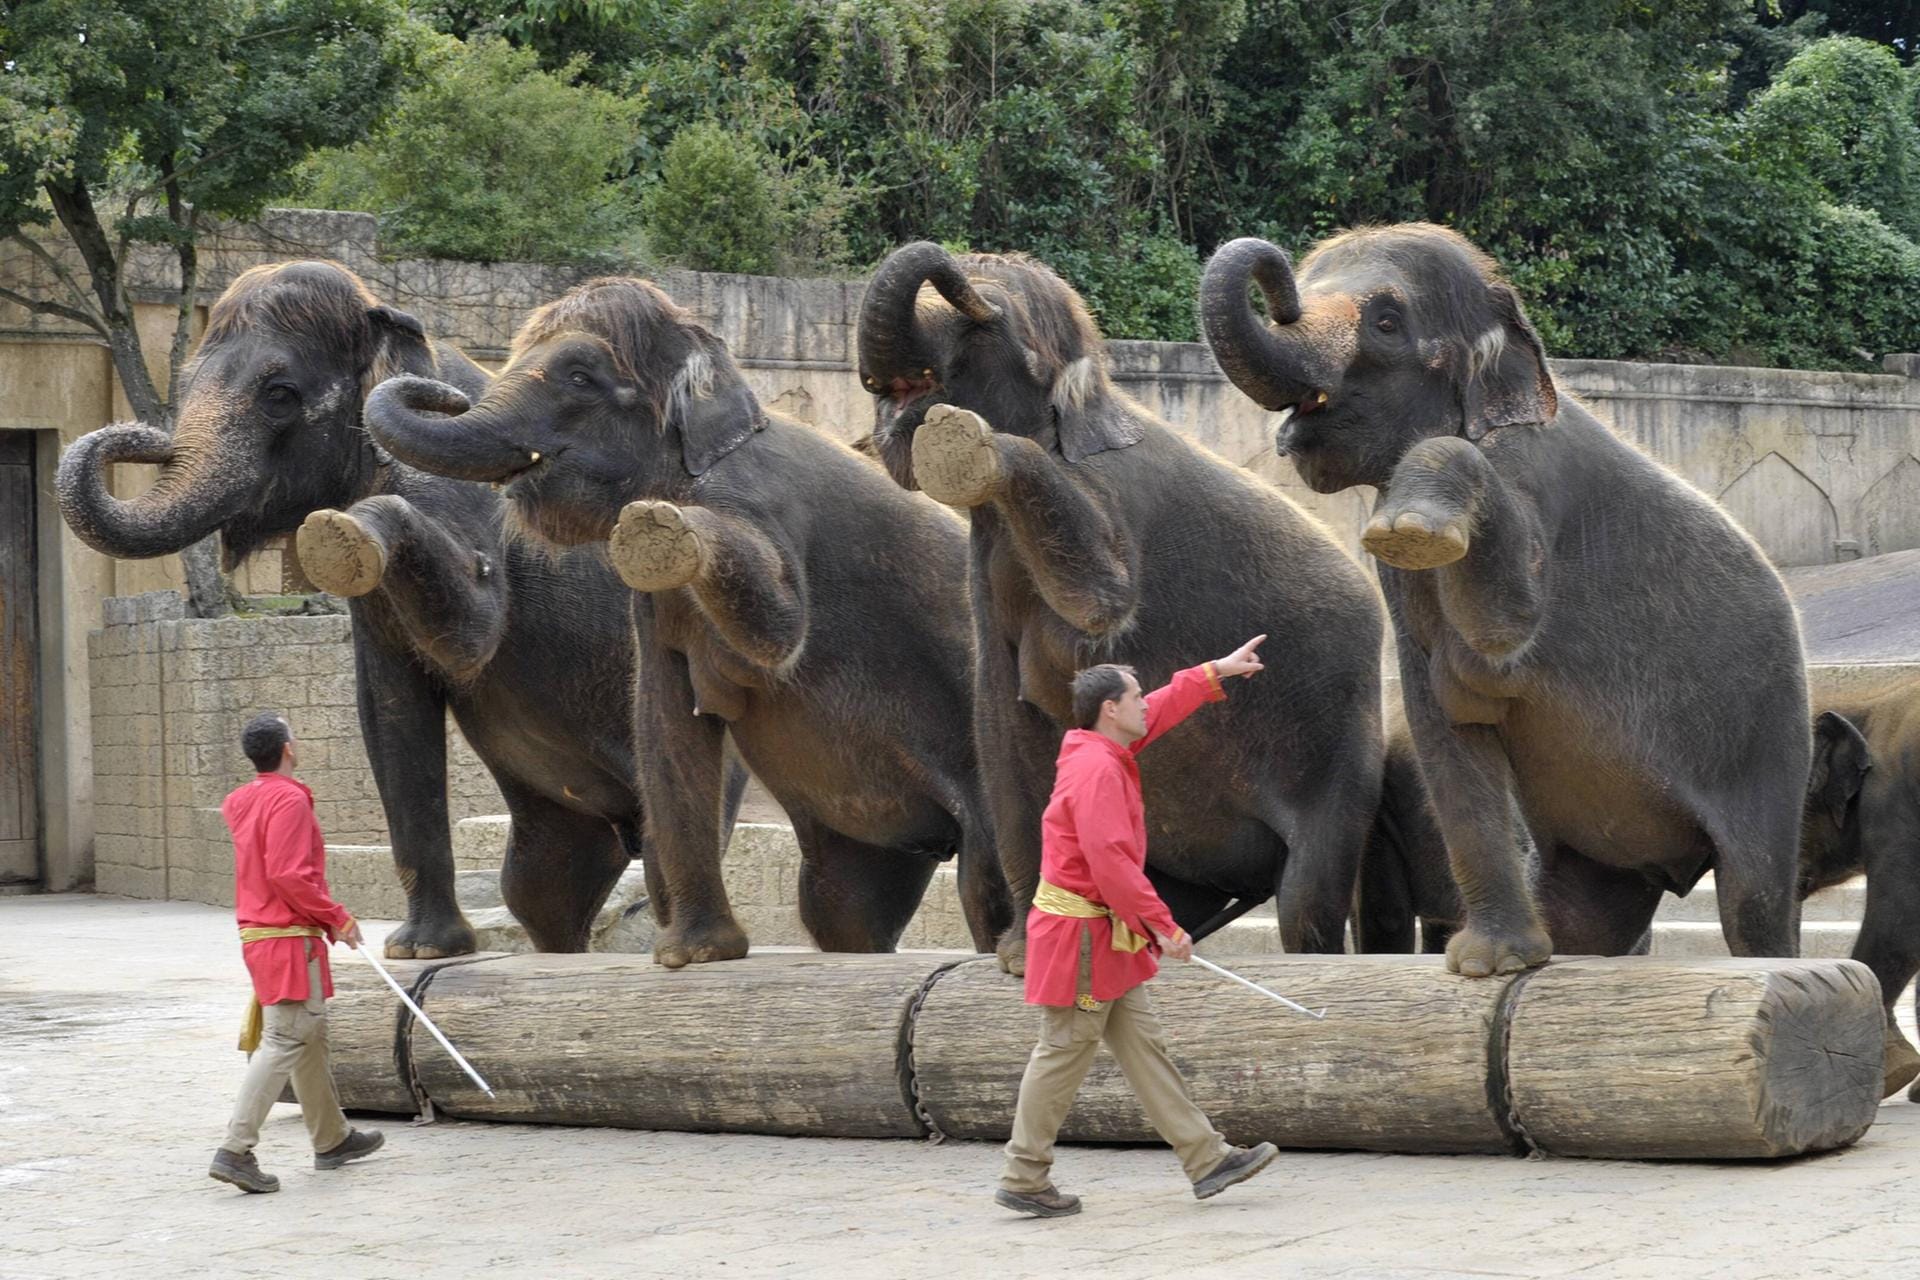 Elefanten werden dazu getriezt den Touristen eine schöne Show zu liefern.